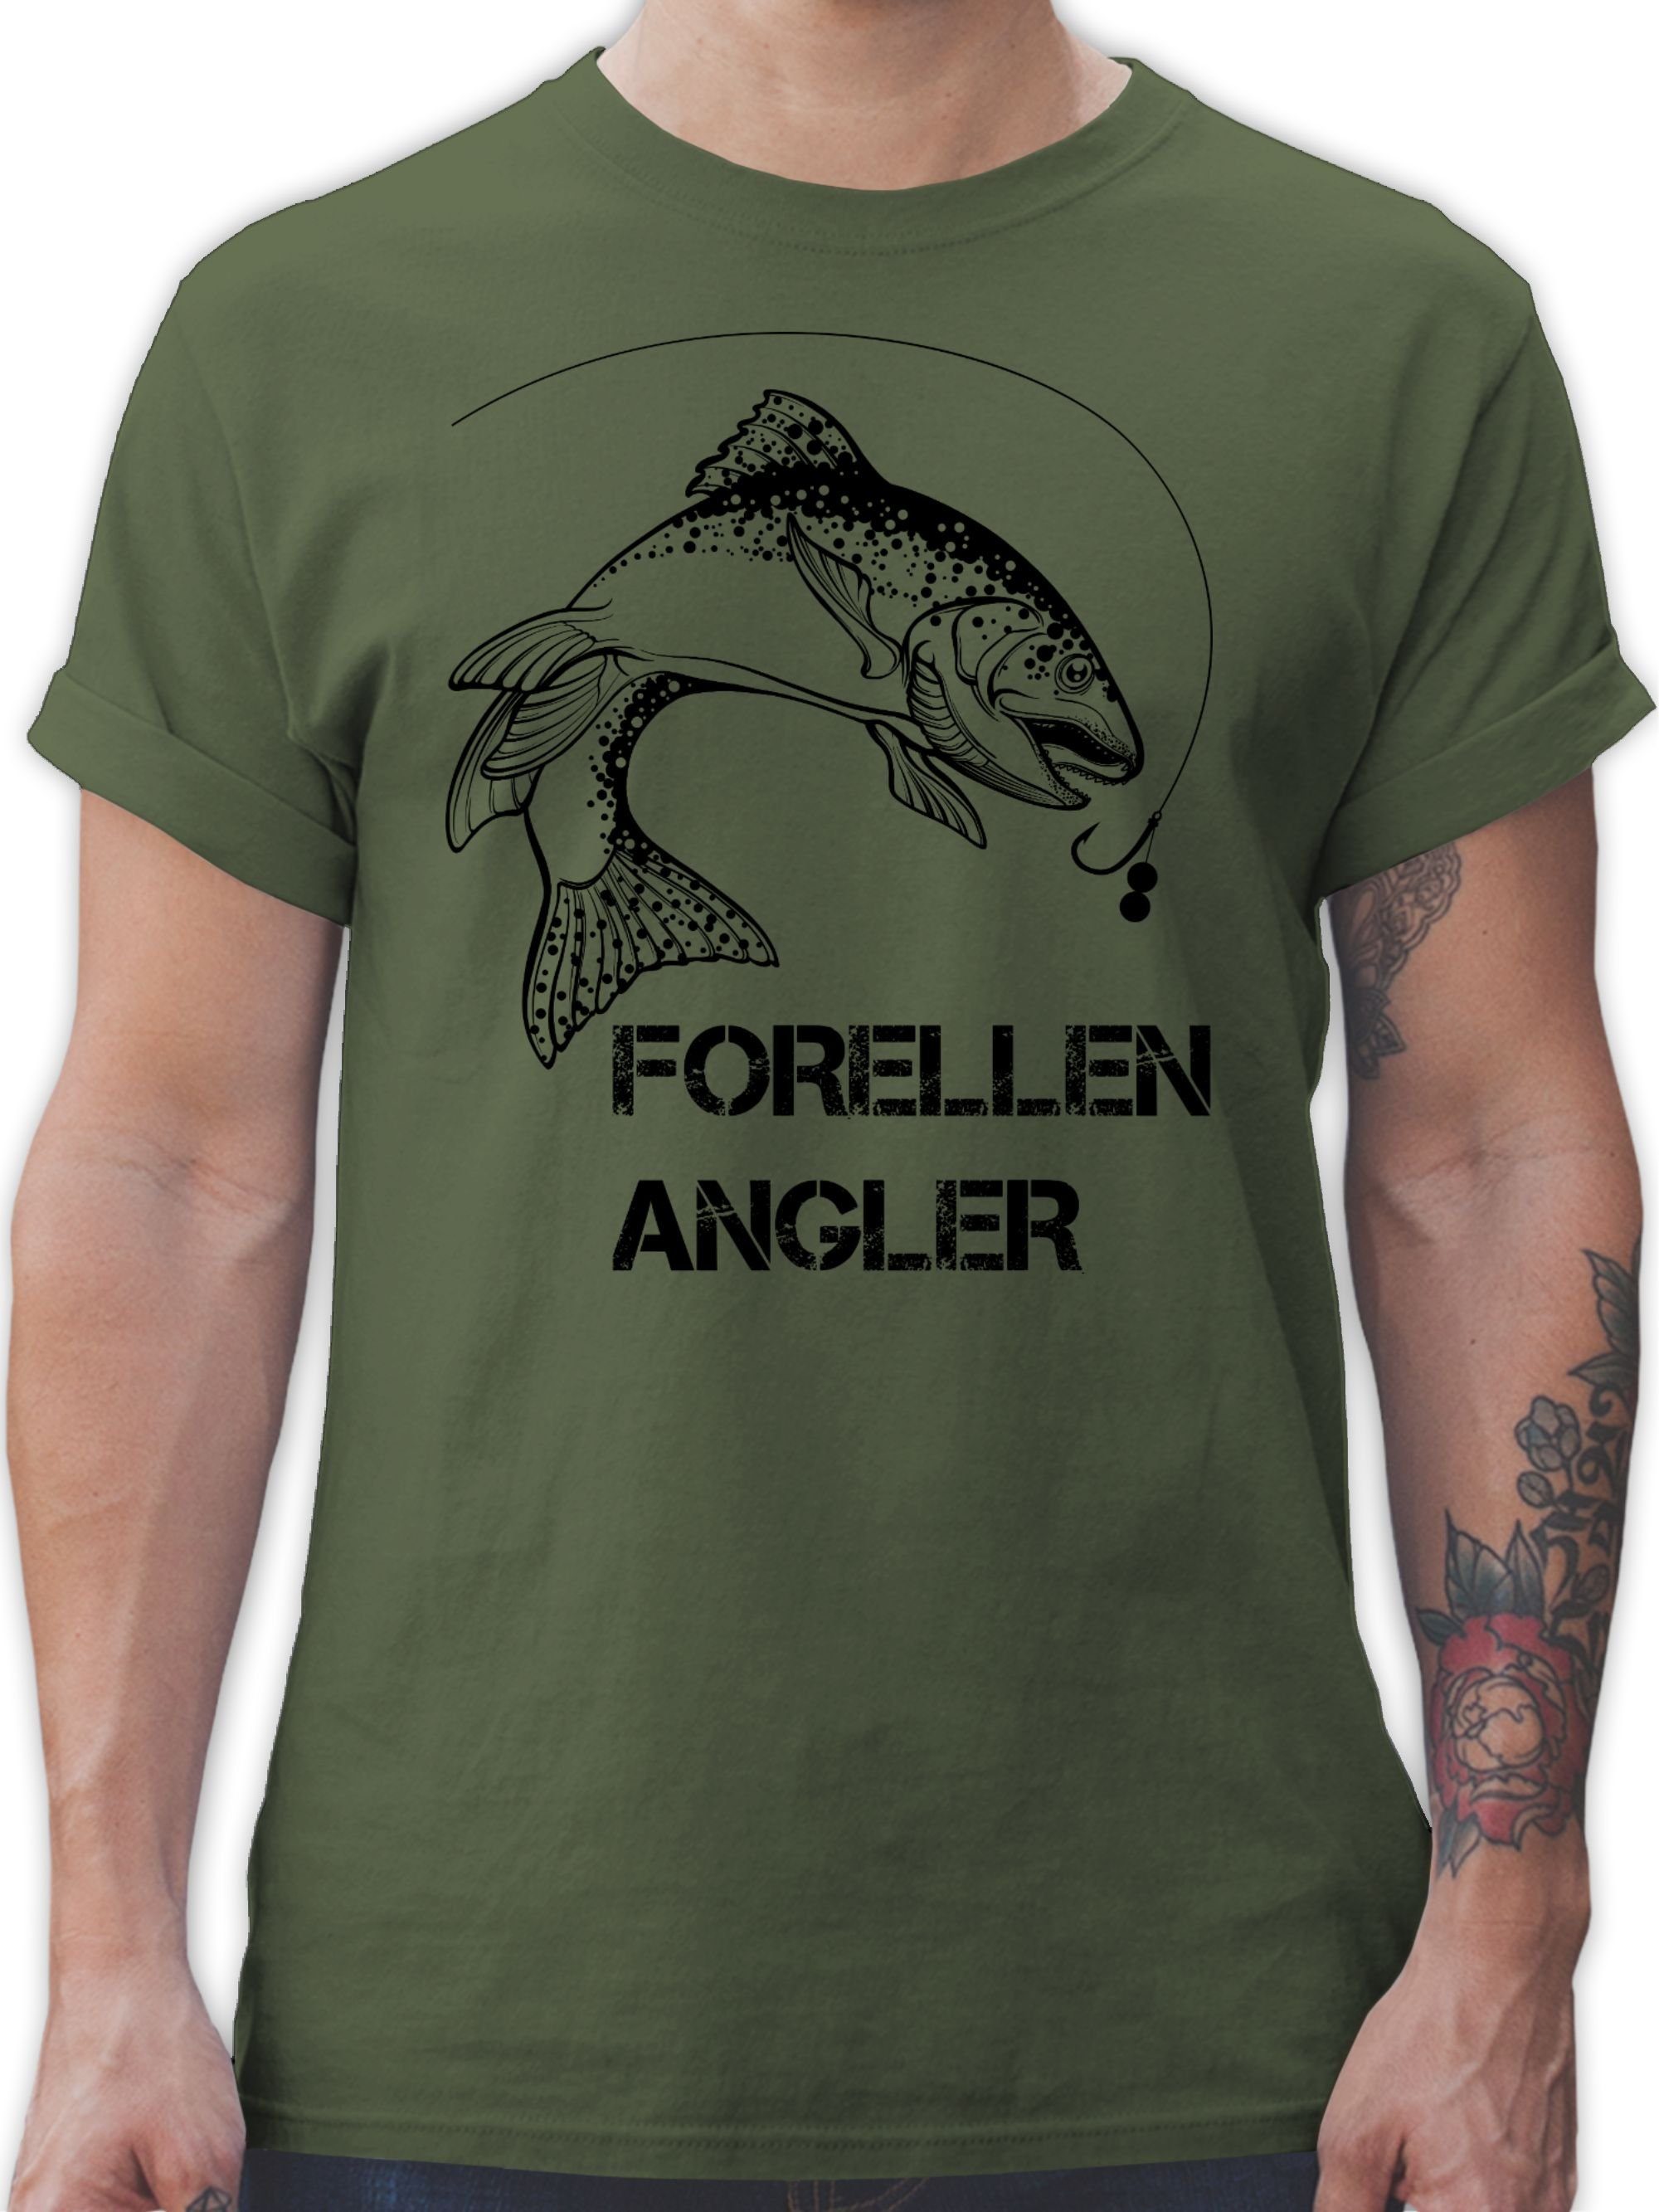 Geschenke Army Angler - Forellenangler T-Shirt 1 schwarz Shirtracer Grün